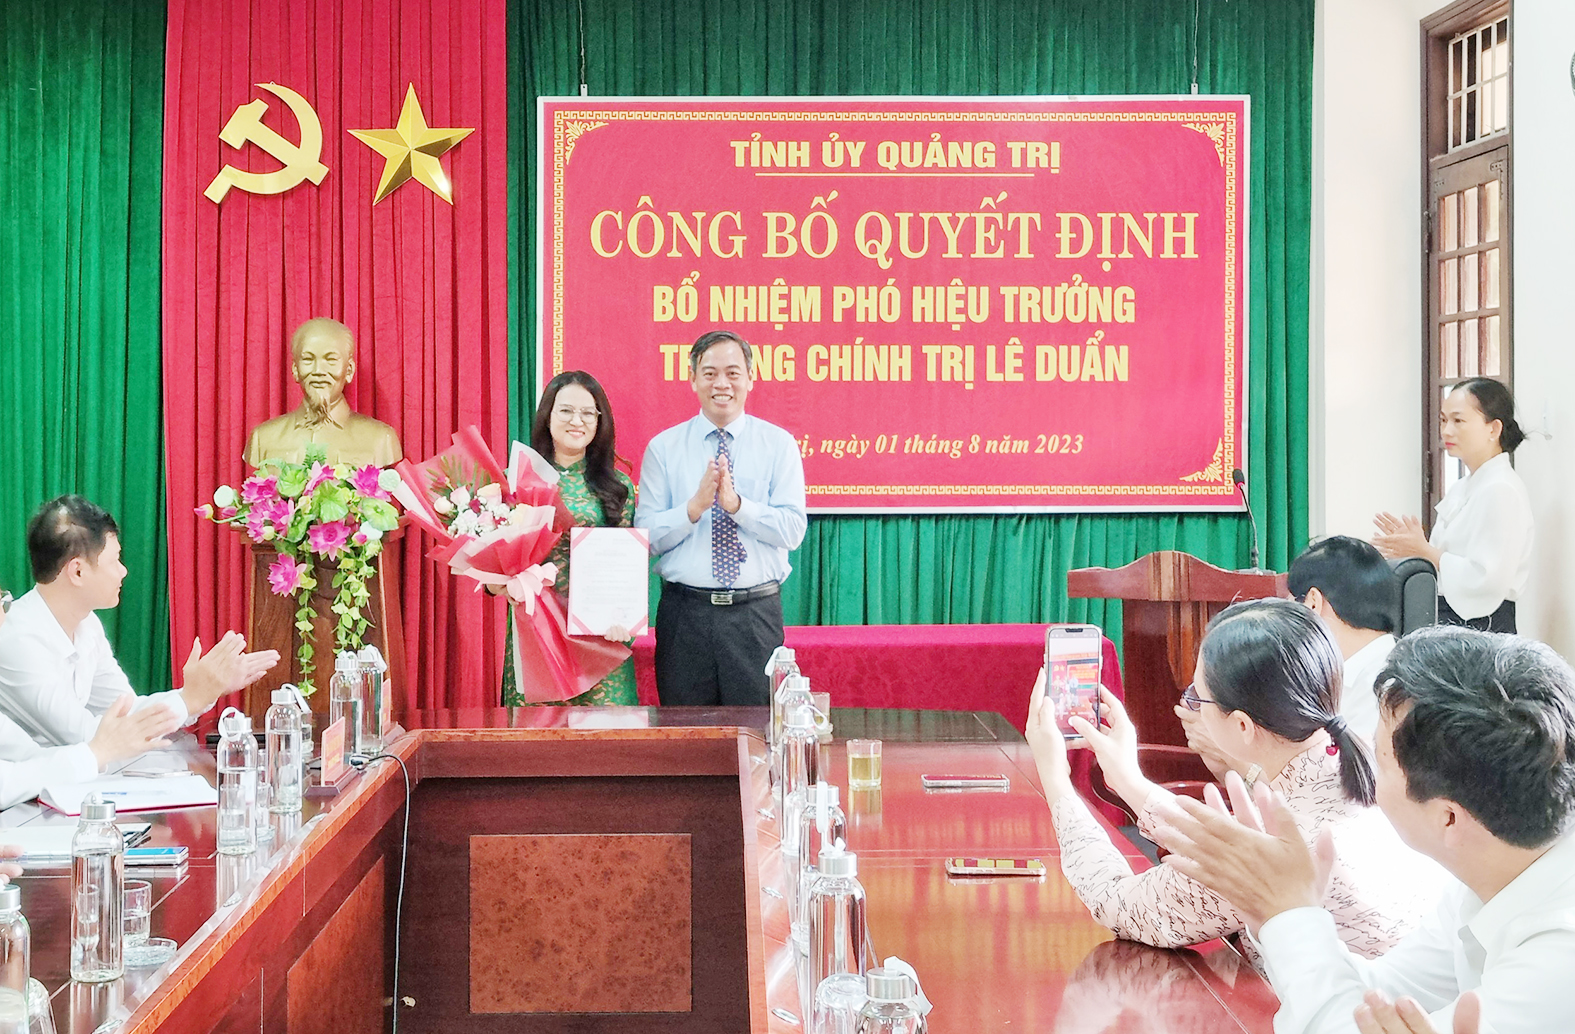 Điều động Phó Giám đốc Sở Công Thương Thái Thị Hồng Minh đến công tác và bổ nhiệm giữ chức vụ Phó Hiệu trưởng Trường Chính trị Lê Duẩn. Ảnh: VGP